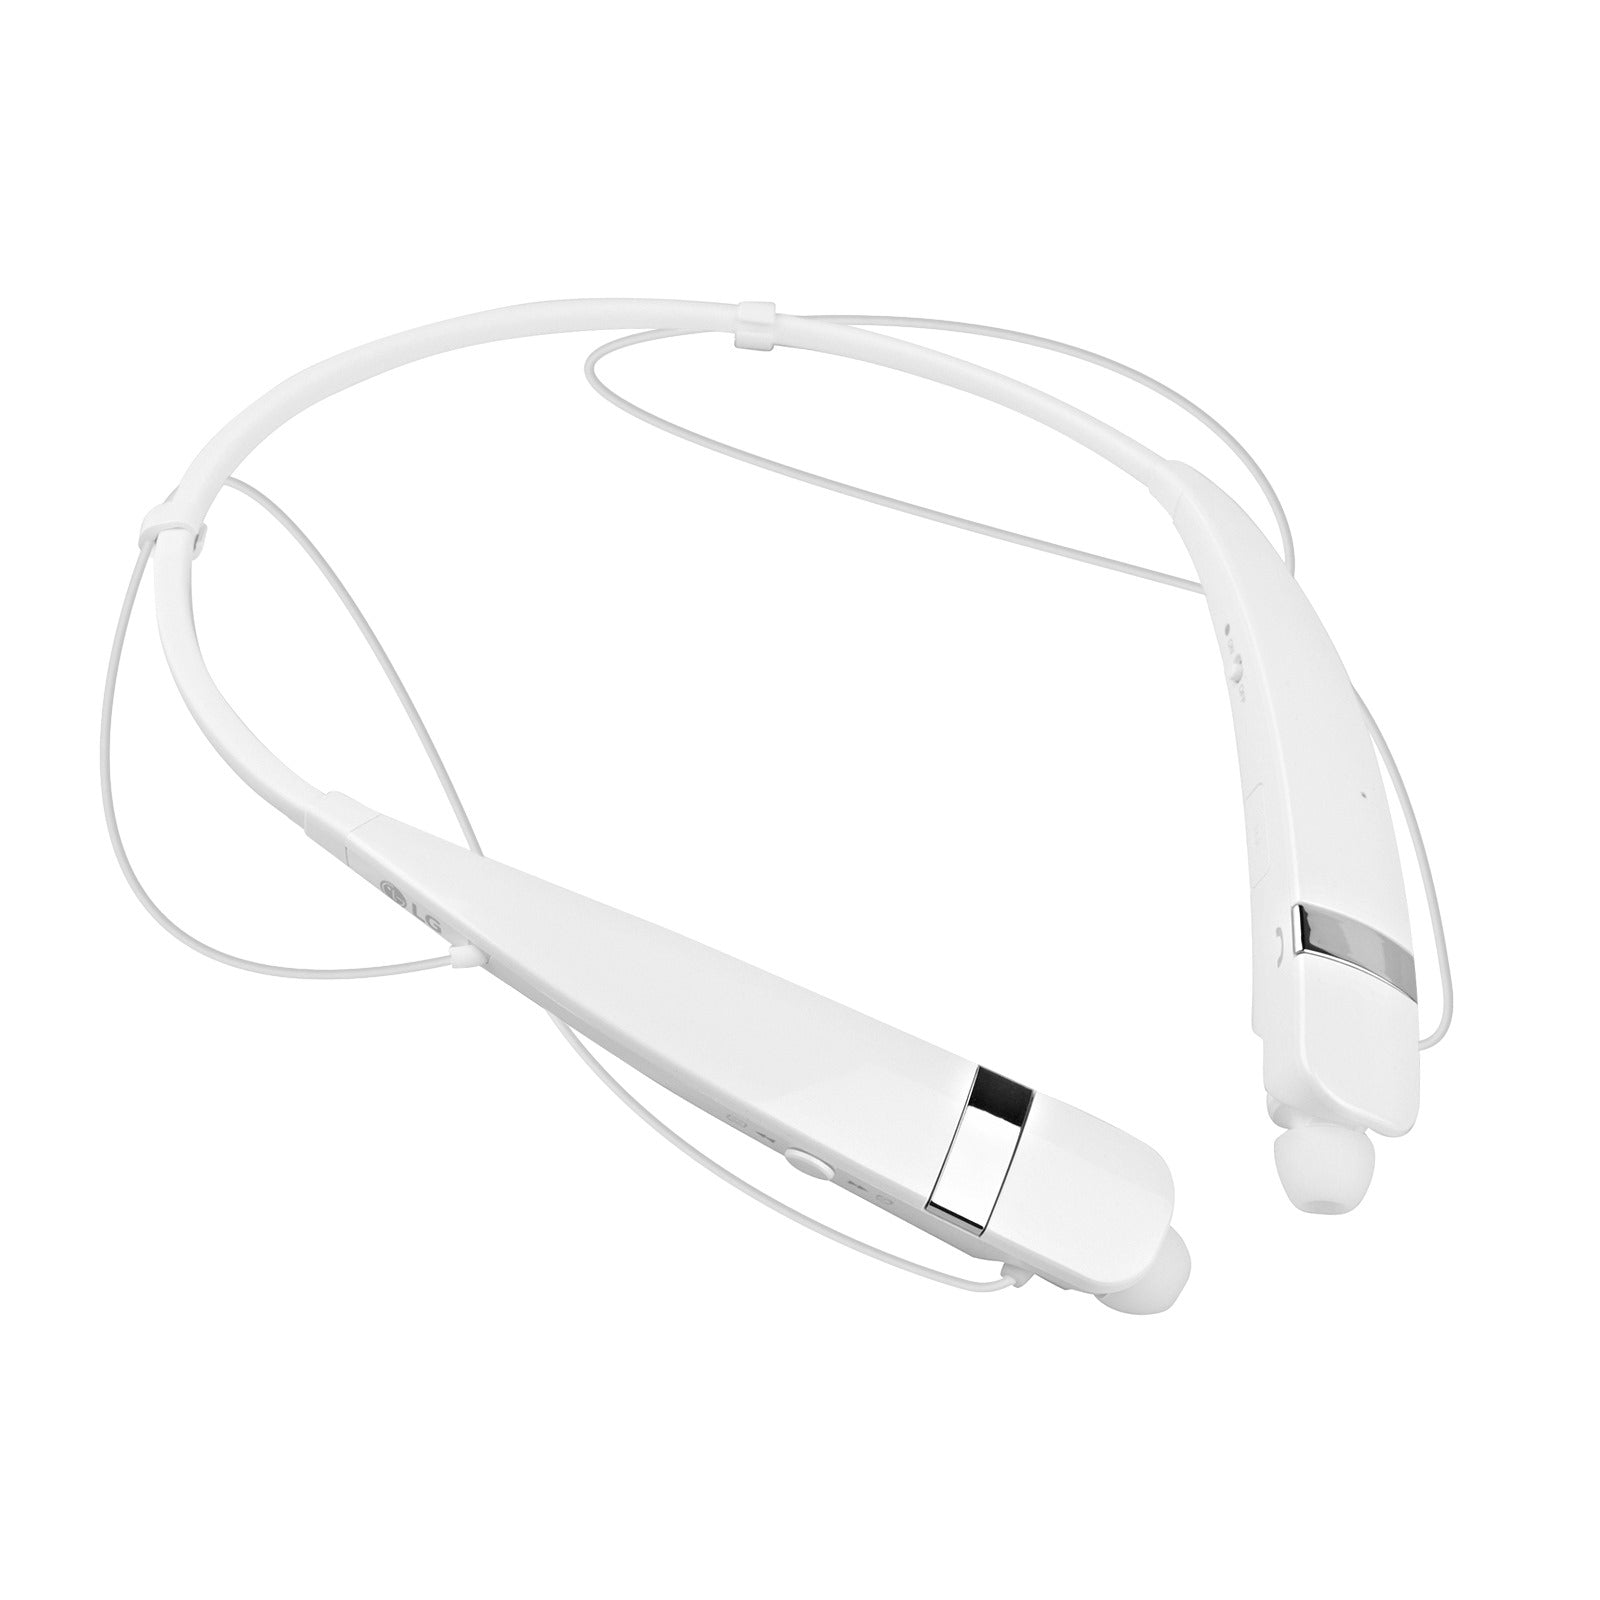 Oreillette Bluetooth sans fil Tone Pro de LG (HBS-760) - Blanc